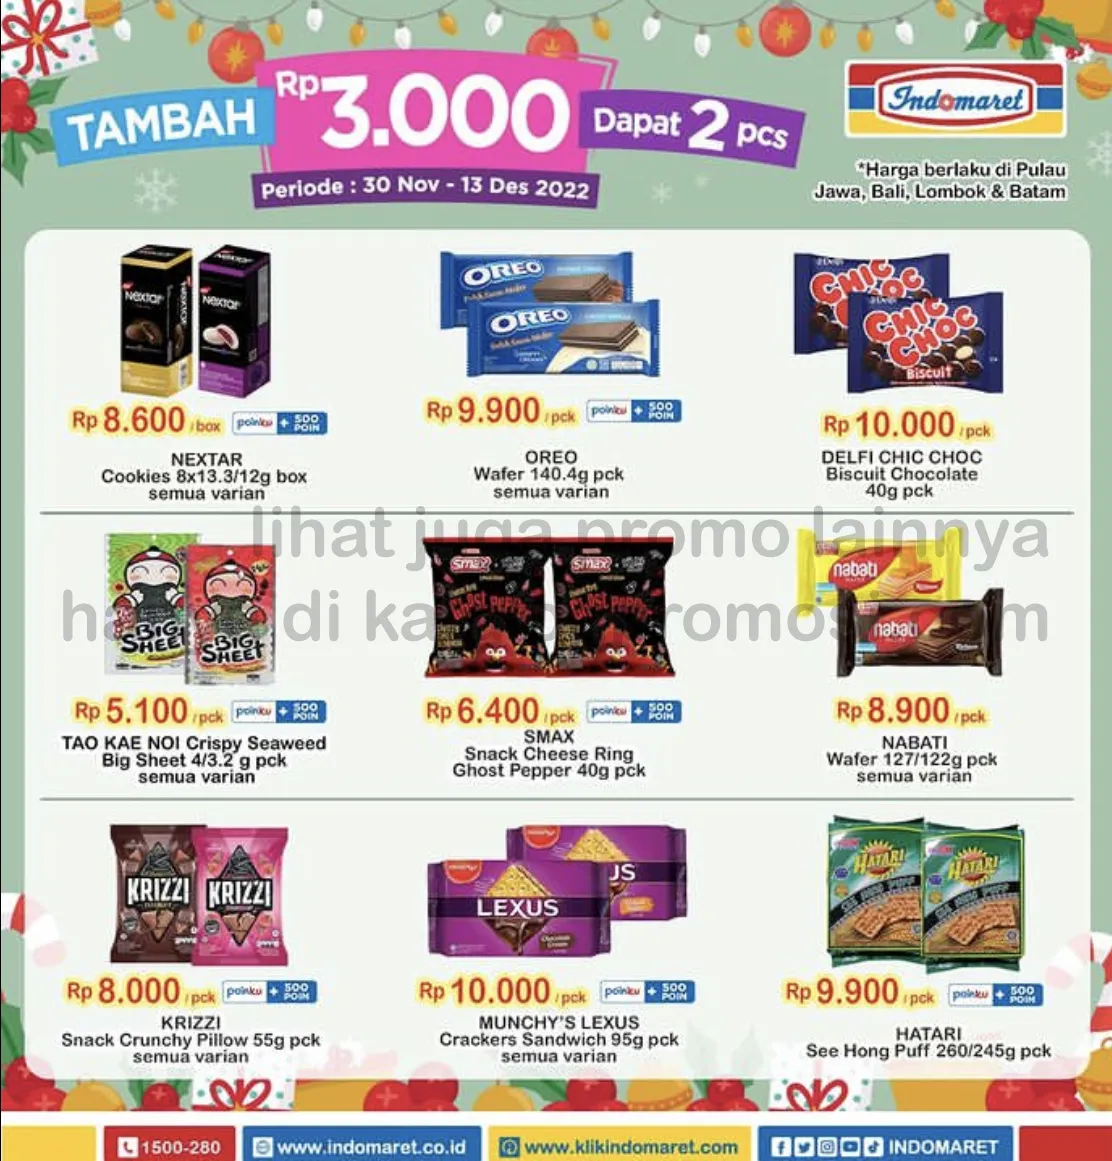 Promo INDOMARET SNACK FAIR - TAMBAH Rp3.000 DAPAT 2 PCS